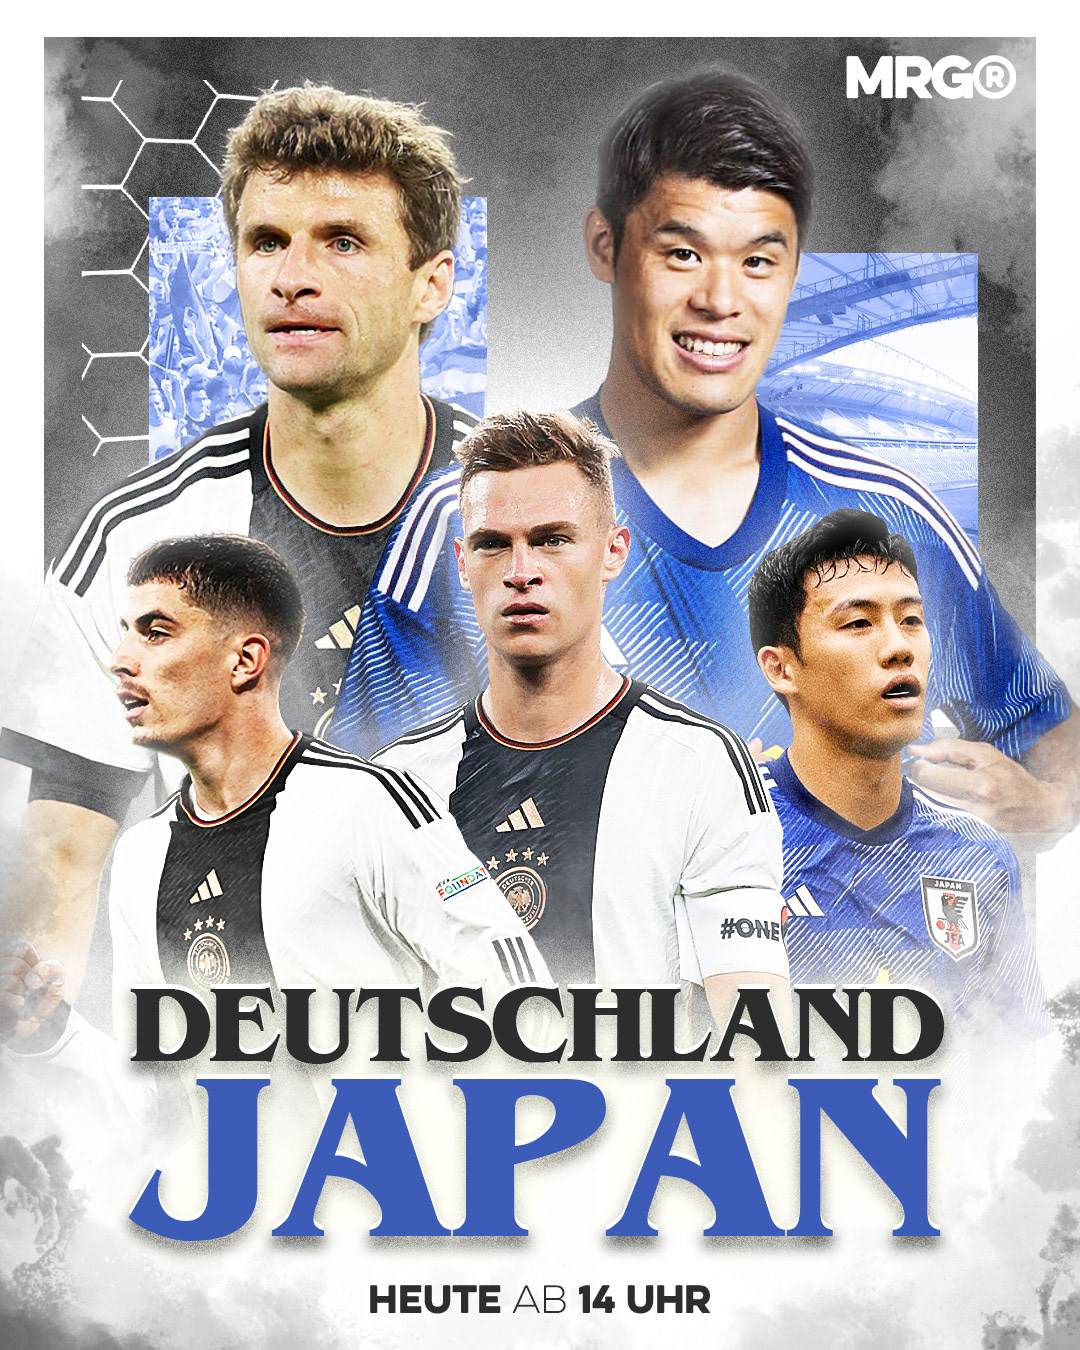 Allemagne design designer football germany graphic design  poster Poster Design soccer world cup